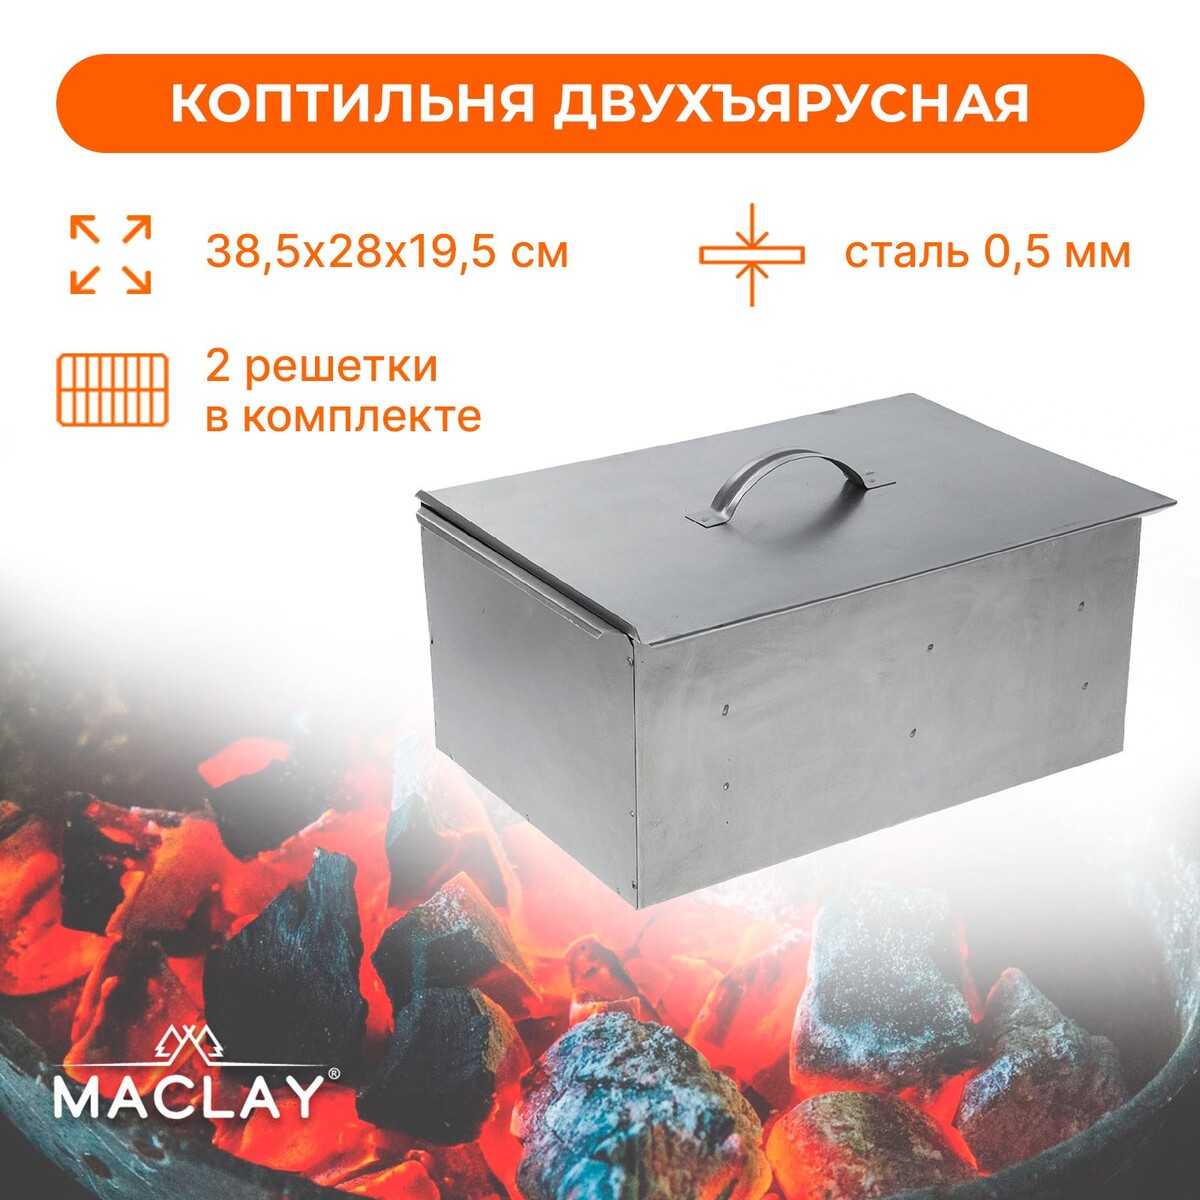 Коптильня двухъярусная maclay, р. 385х280х195 мм мангал коптильня maclay